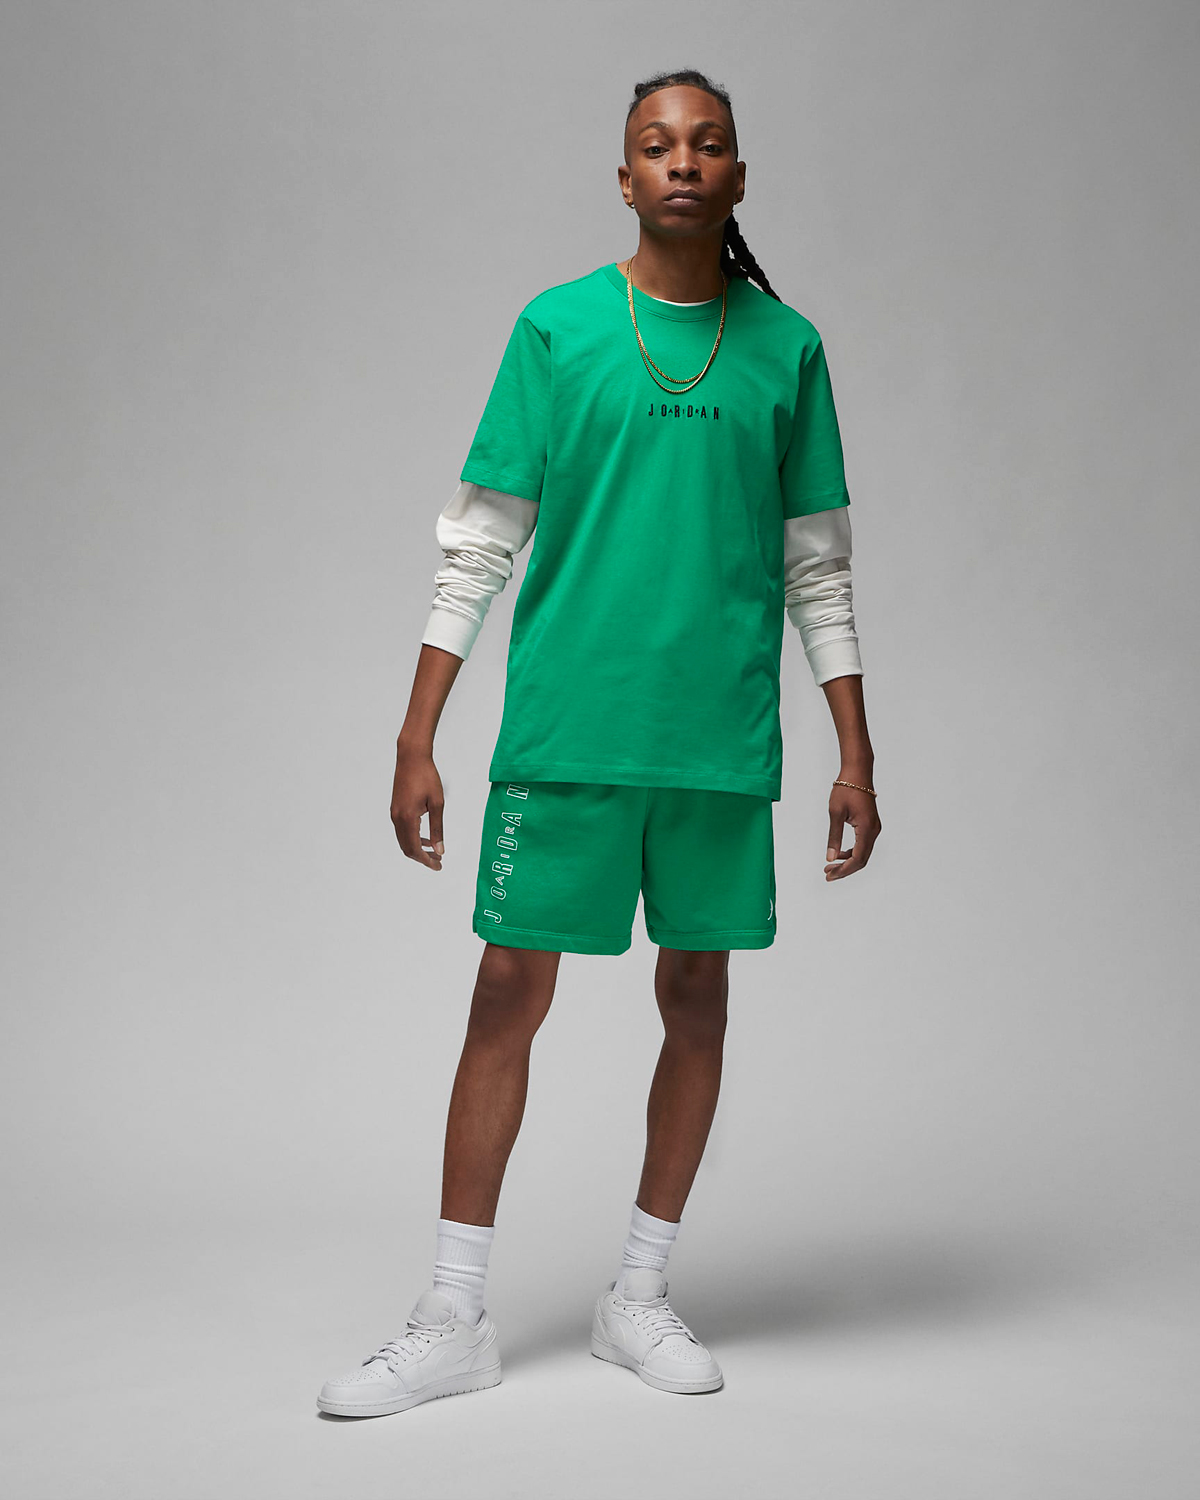 Jordan-Lucky-Green-Shirt-Shorts-Outfit